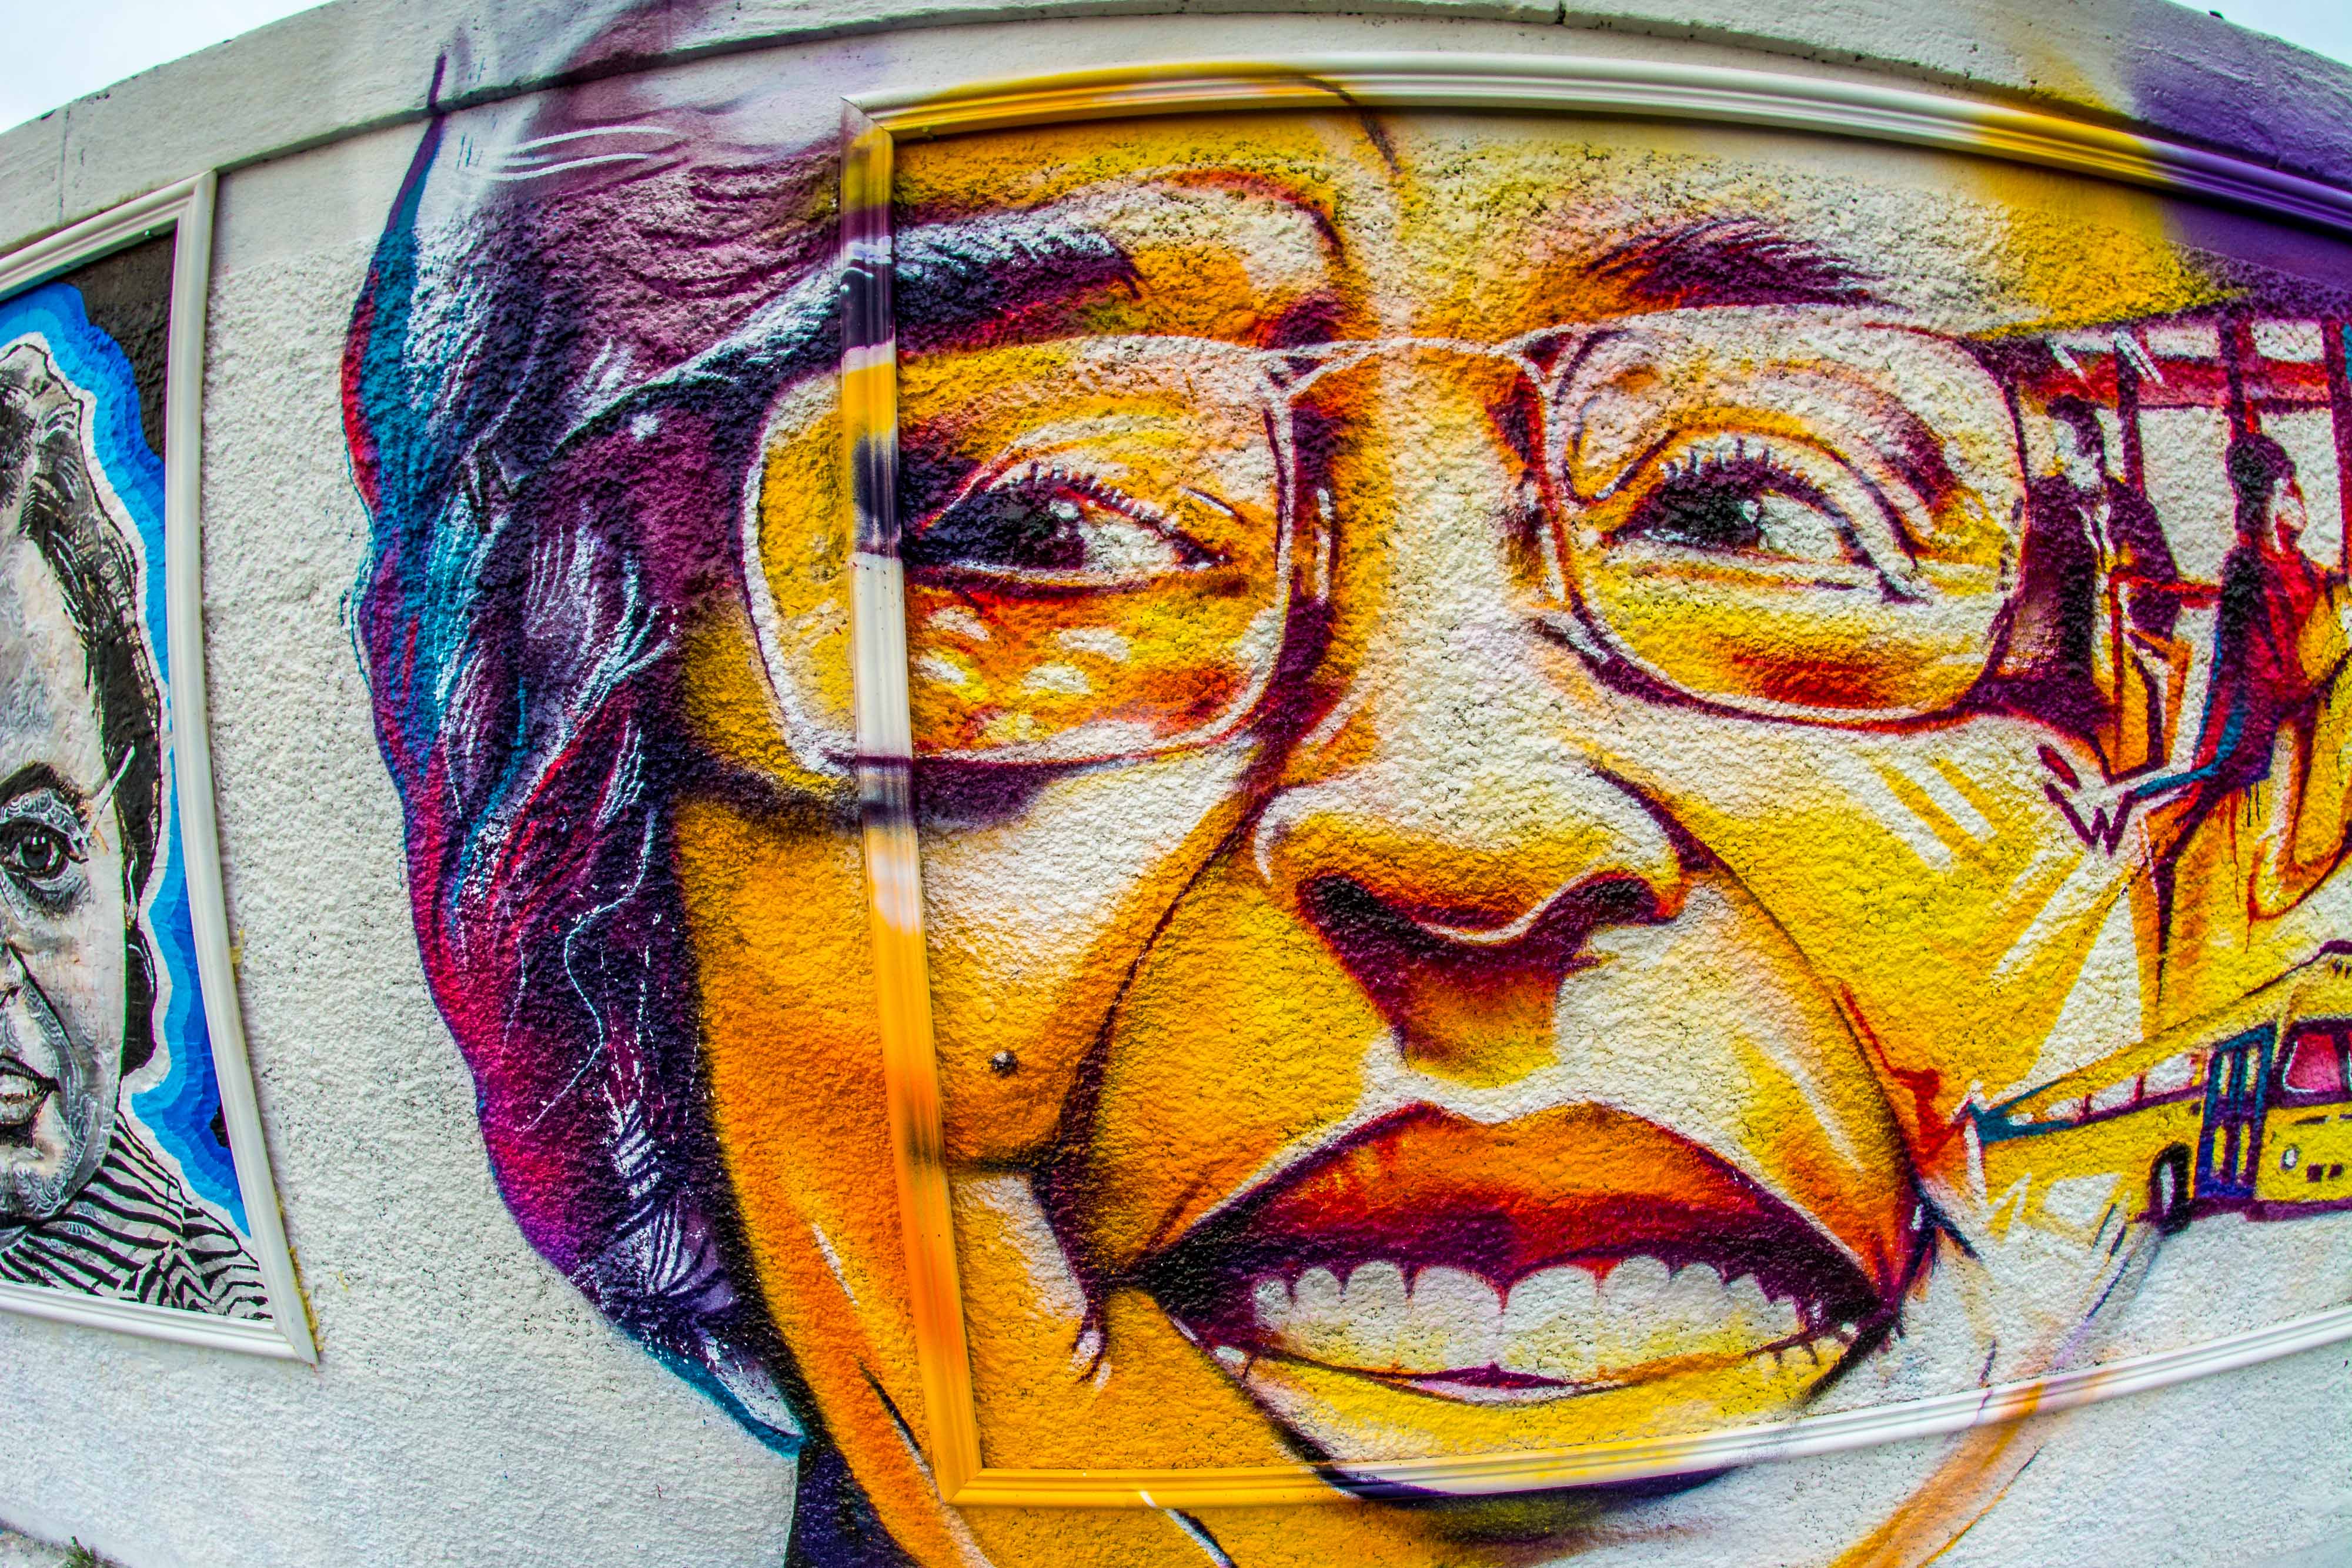 rosa parks fait le mur streetart street art paris blogvoyage blog voyage icietlabas